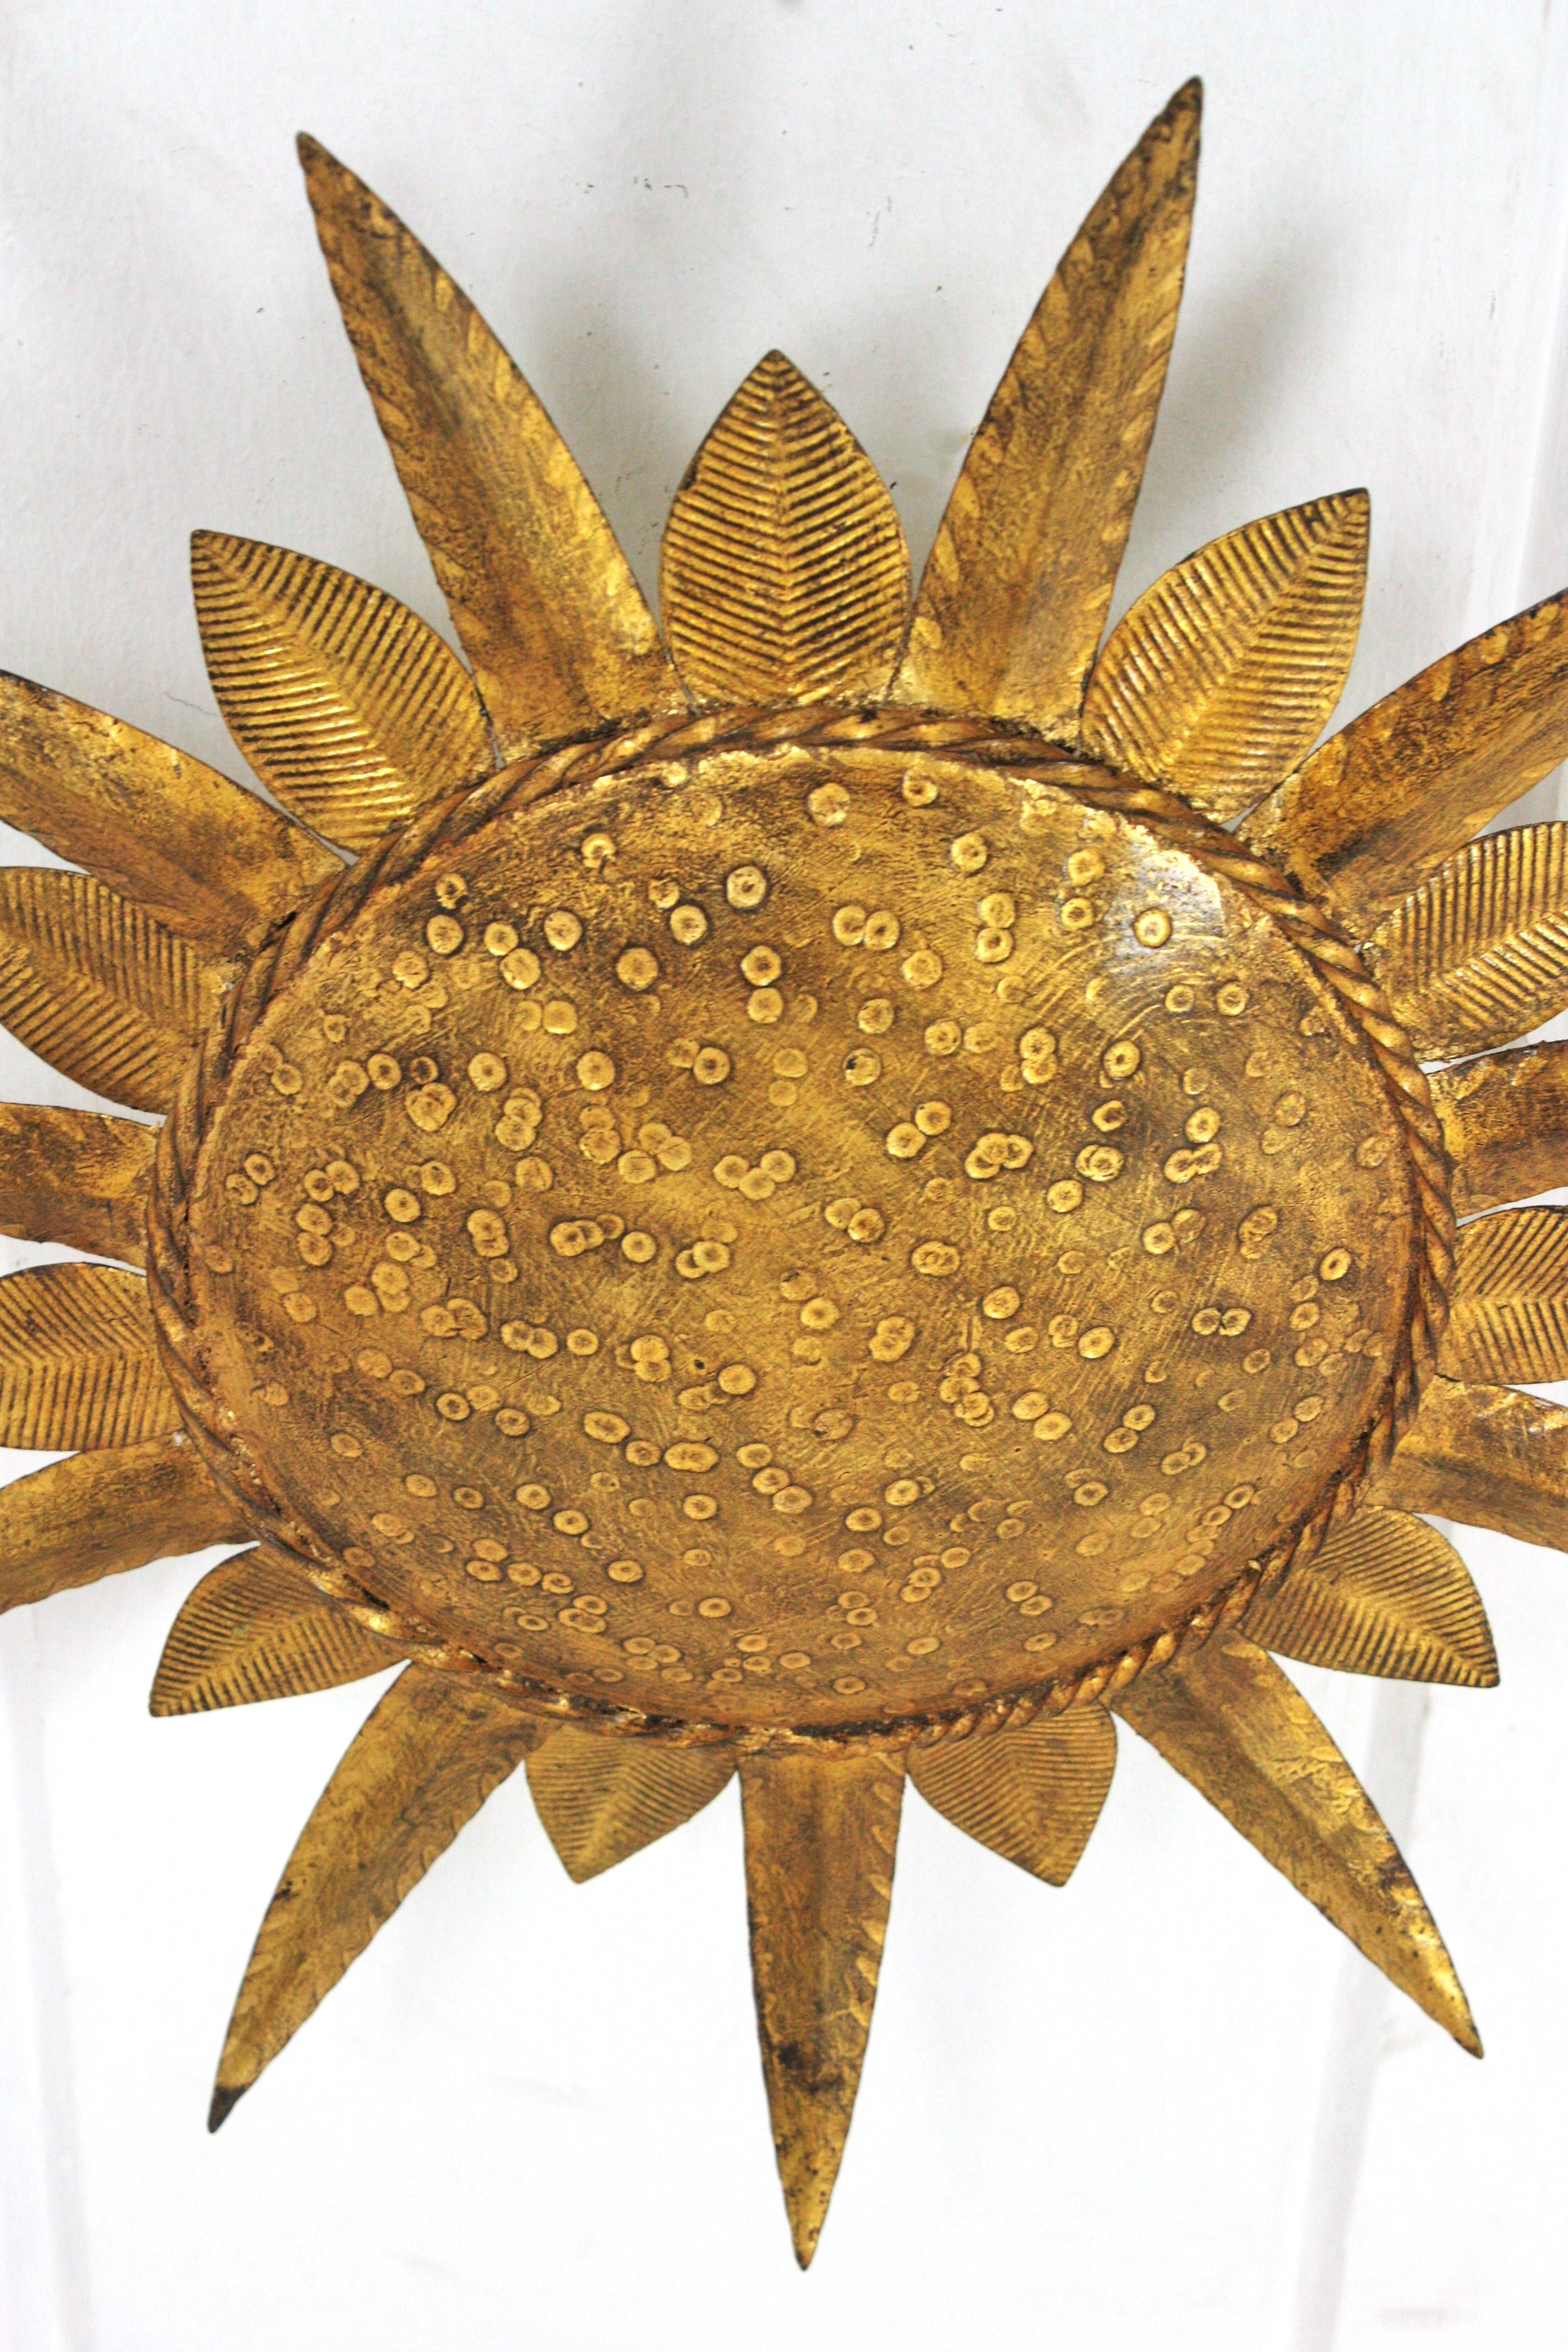 Auffällige, blattvergoldete, eisenbeschlagene, flächenbündige Sonnenschlange. Hergestellt von Ferro-Art. Spanien, 1950er-1960er Jahre.
Dieser Deckenfluter besteht aus einer Eisenstruktur mit einer runden Platte in der Mitte, die von abwechselnd